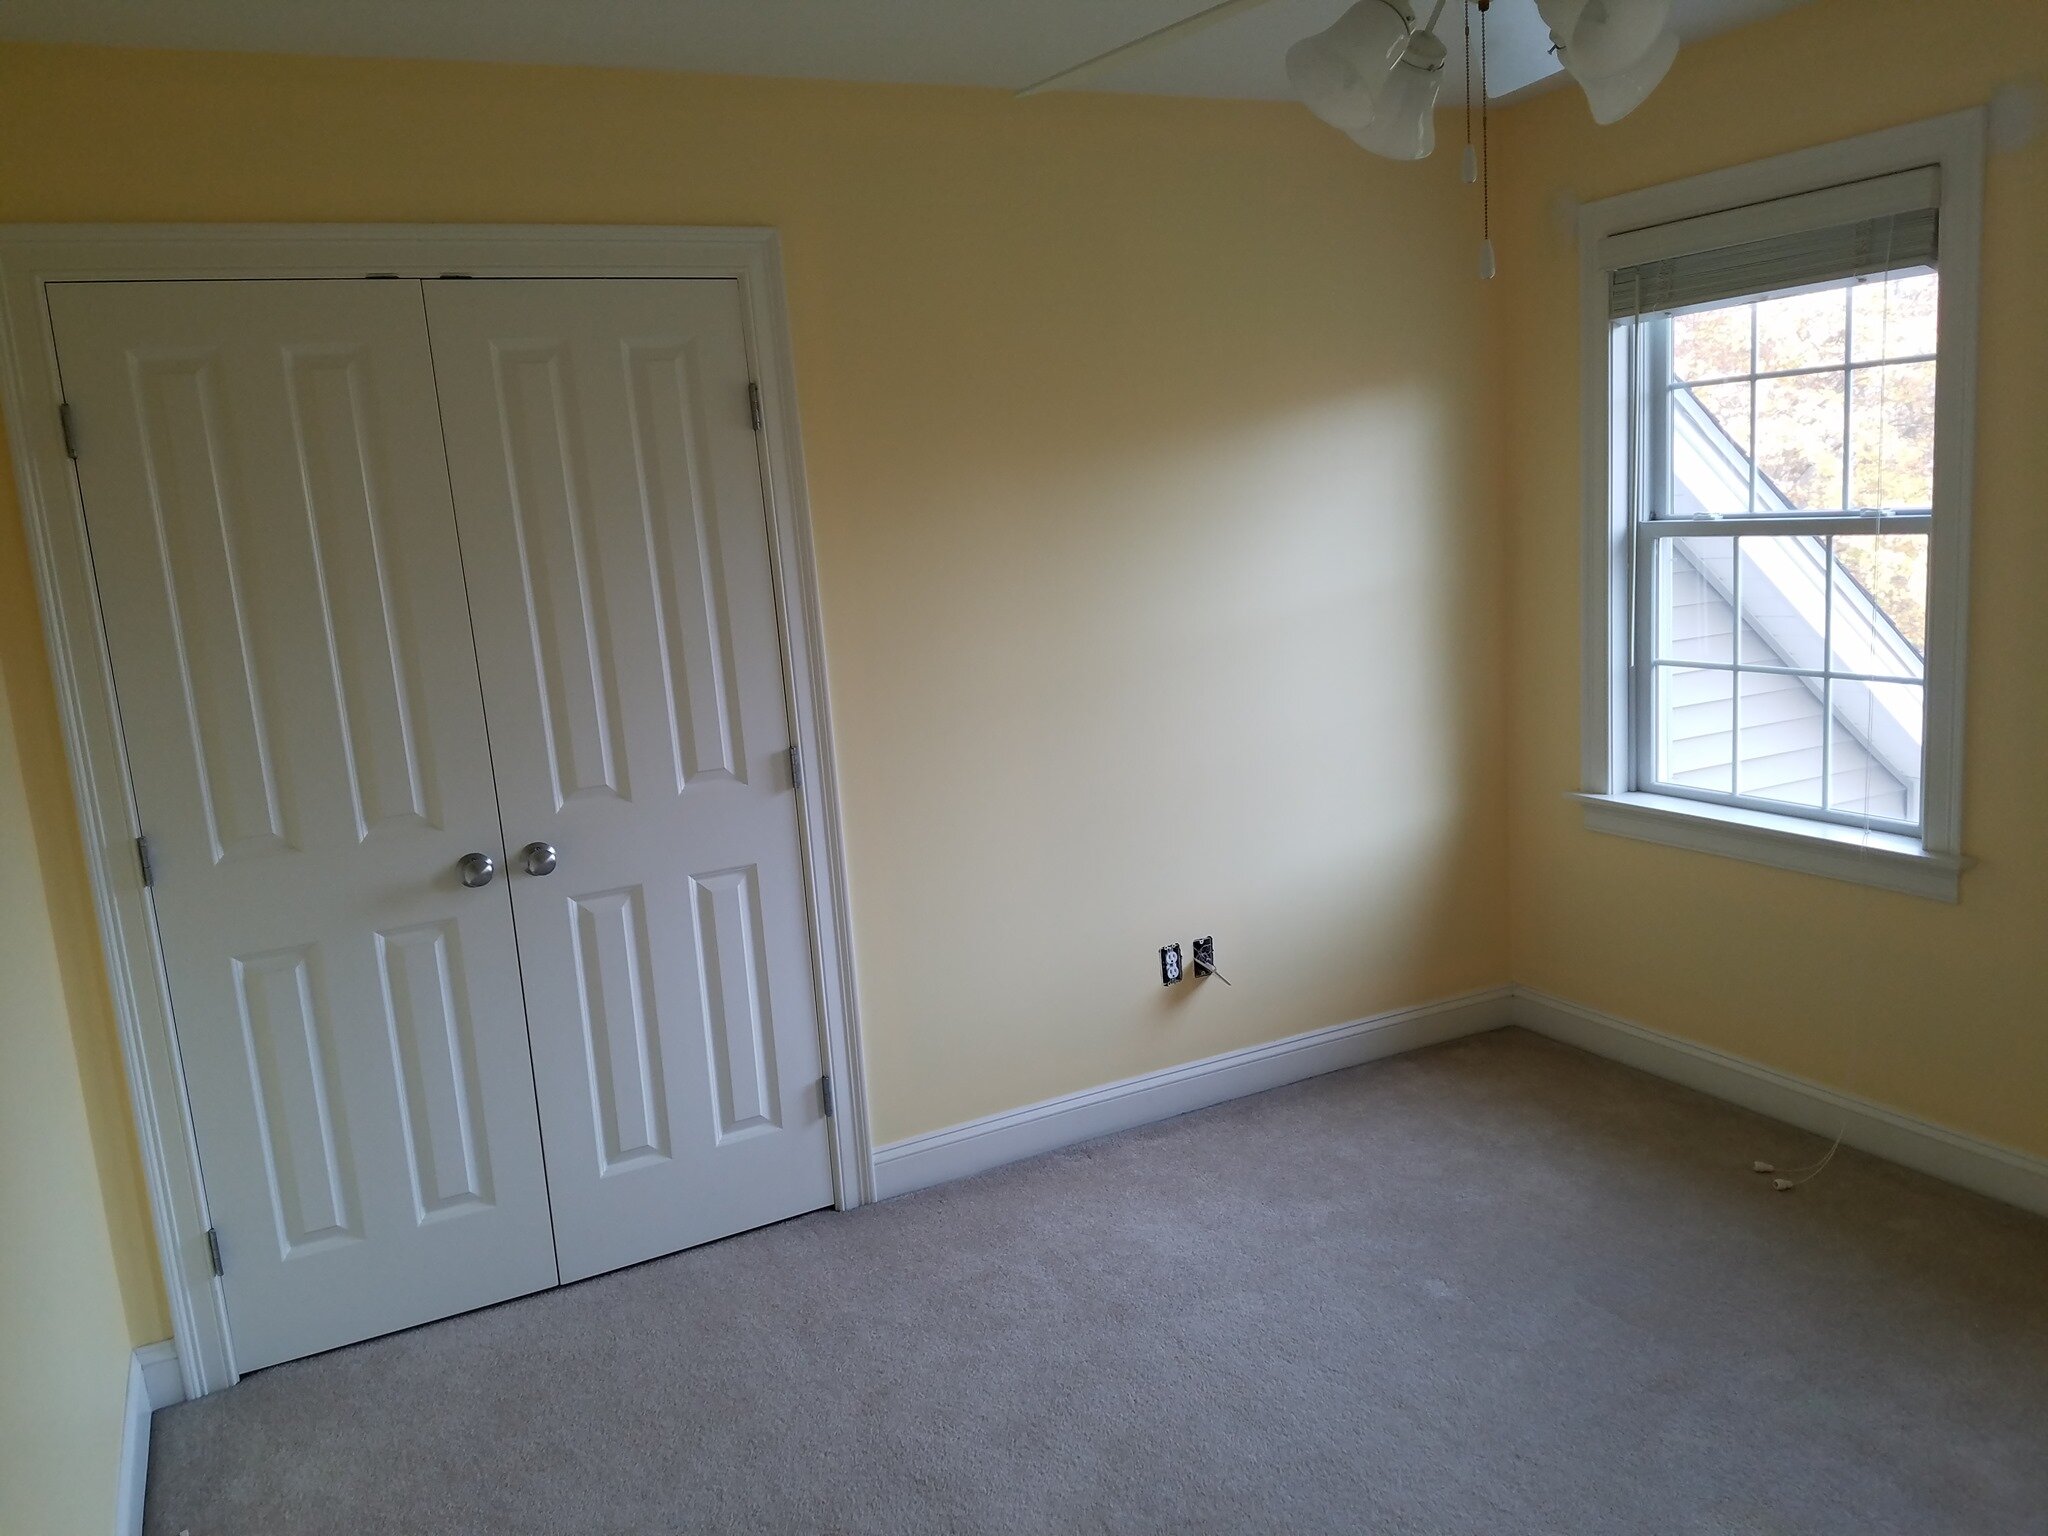  Northeast Painters, LLC Interior paint bedroom walls, doors, windows, trim, ceiling 